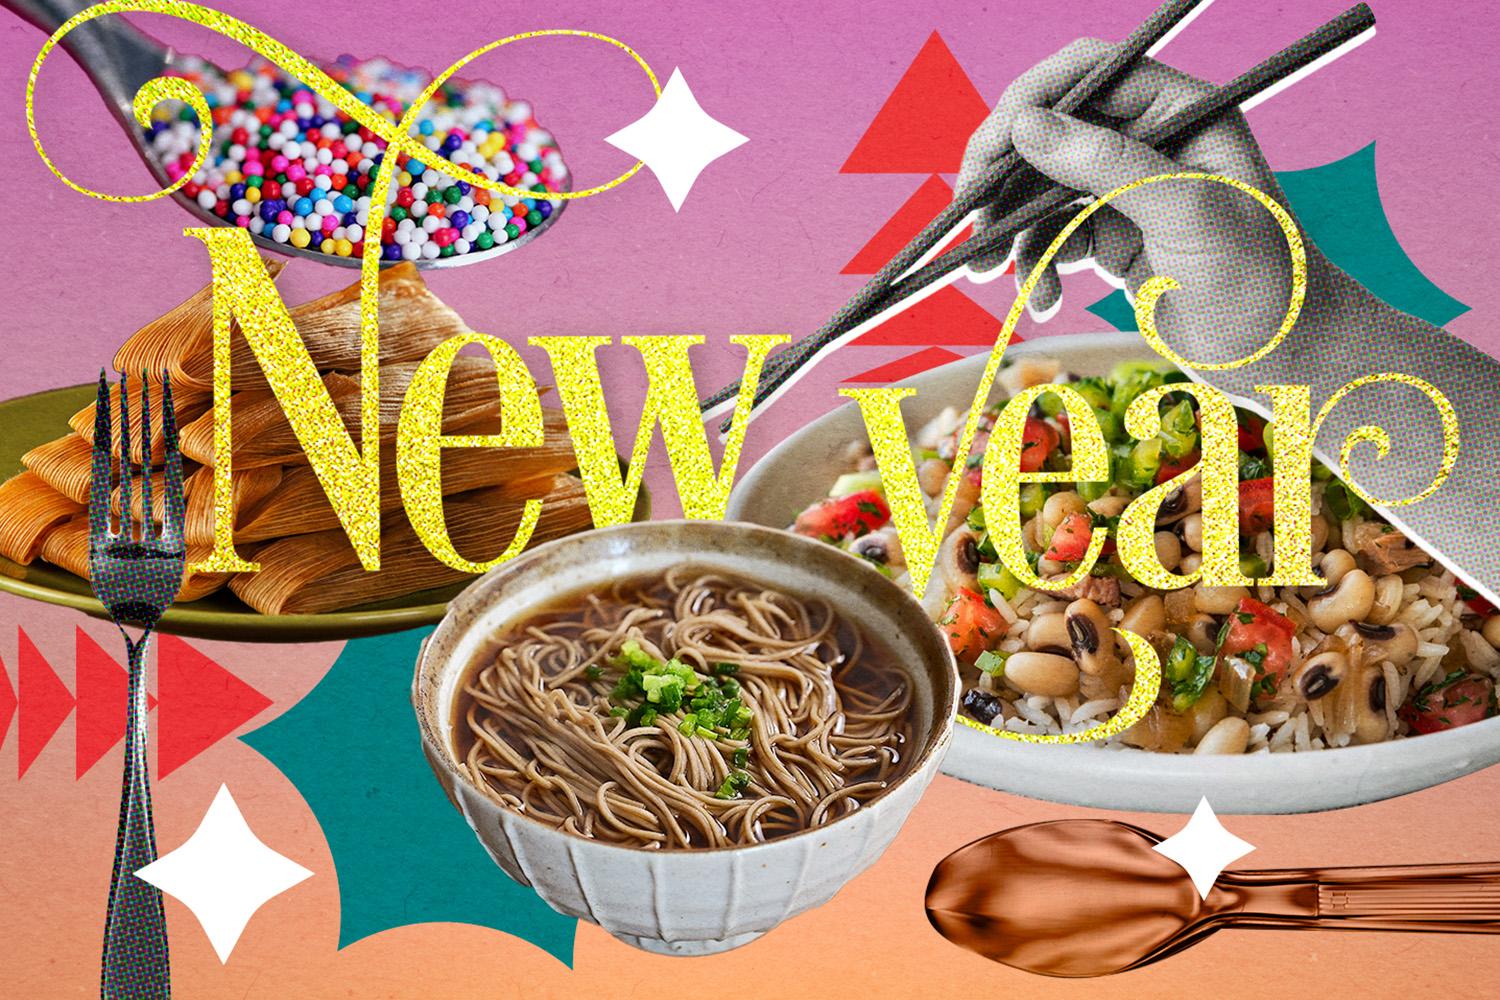 New-Year-foods-tradition-around-the-world-SPACEBAR-Hero.jpg